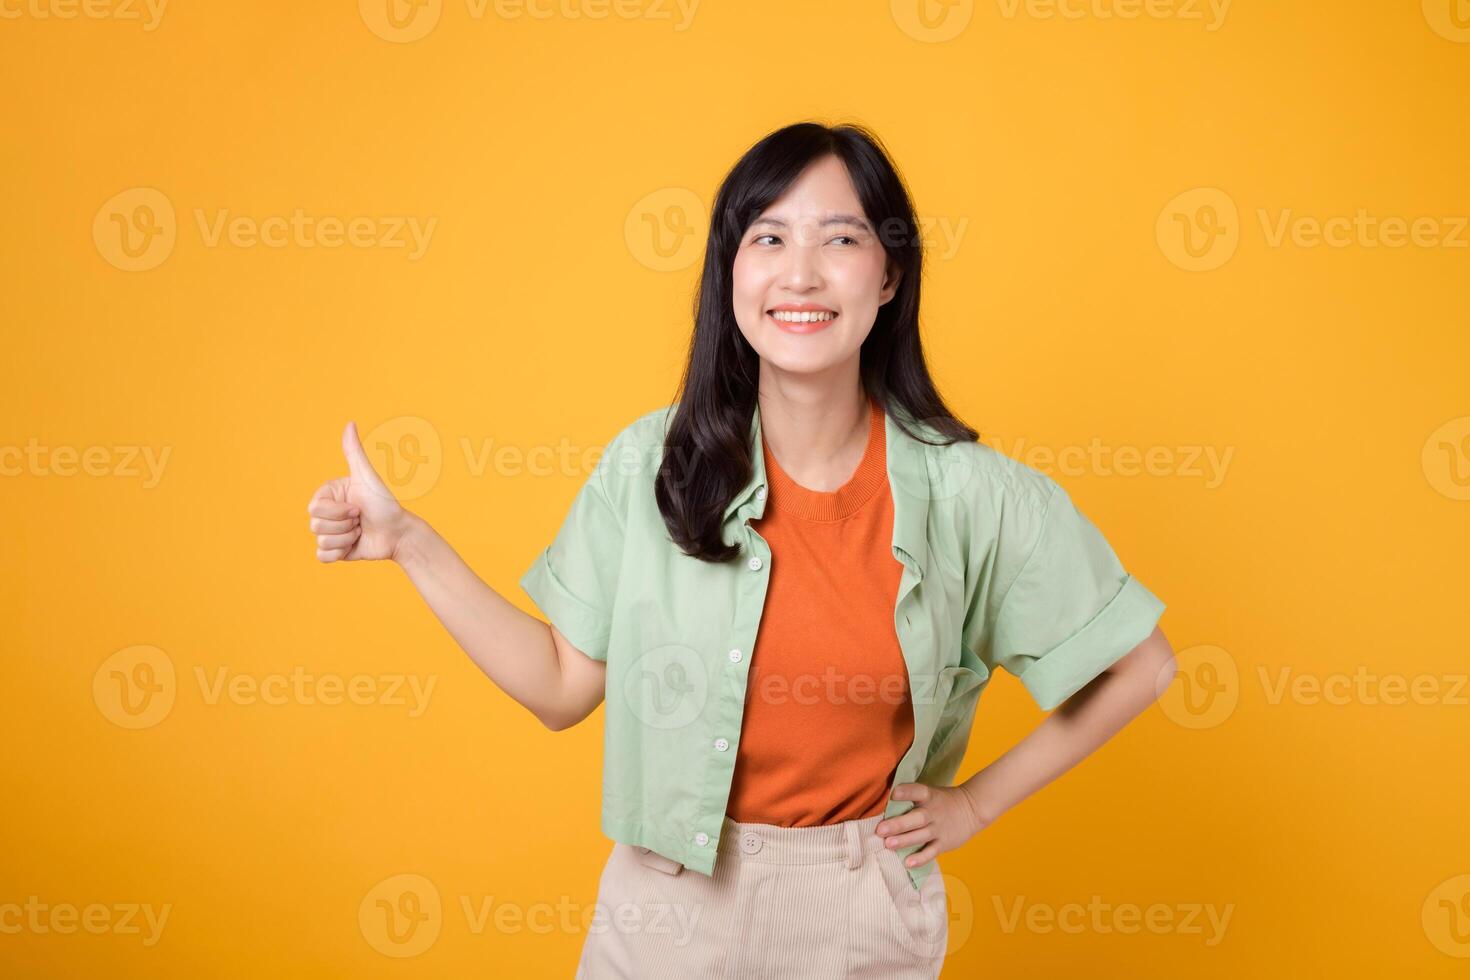 ung asiatisk kvinna i henne 30-talet, påklädning ett orange skjorta och grön hoppare. henne tummen upp gest, isolerat på en vibrerande gul bakgrund, betecknar en begrepp av positivitet och avtal. foto